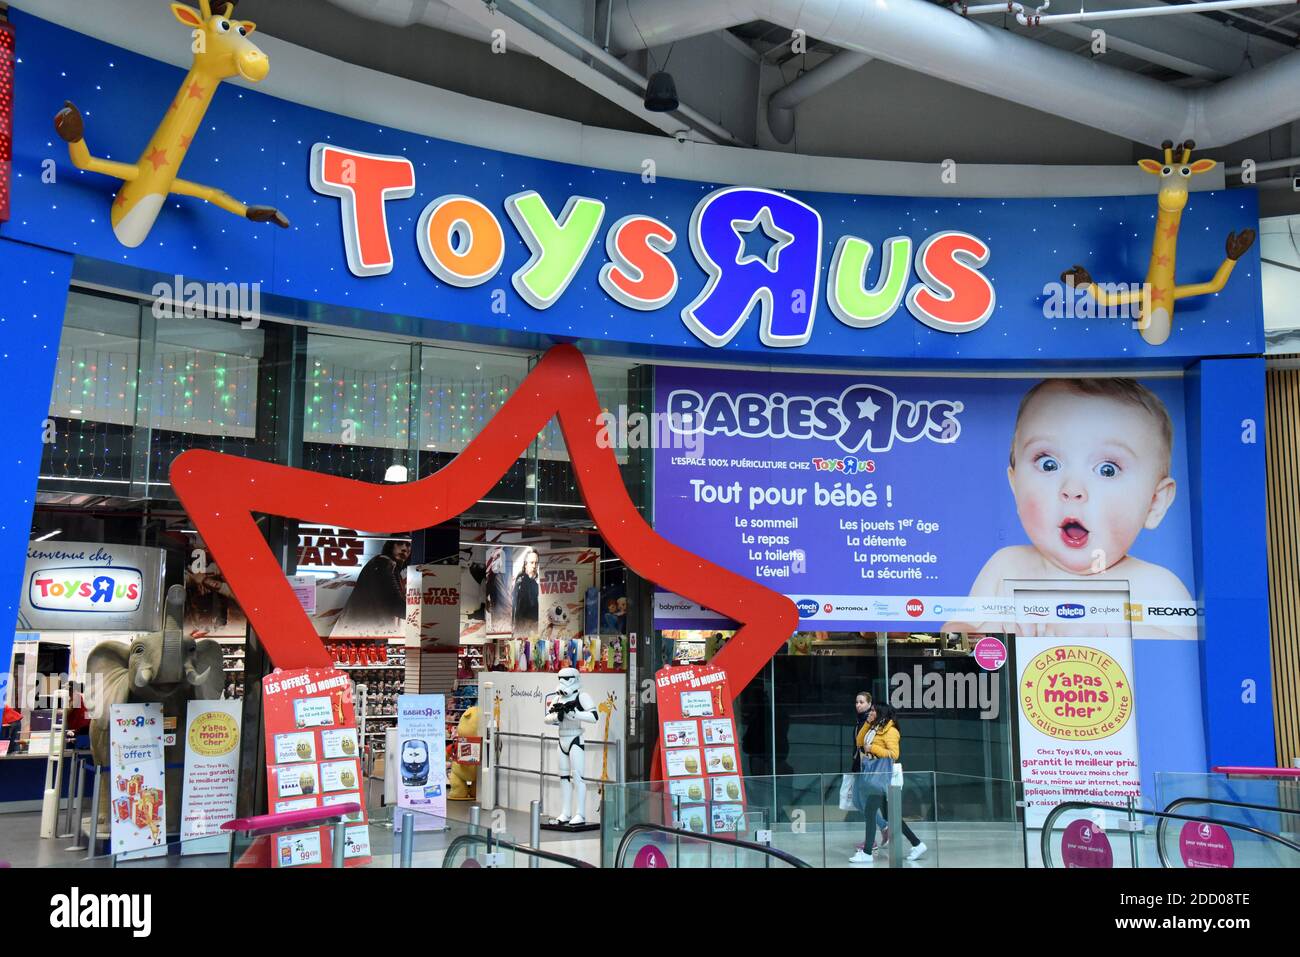 Ein Toys R US-Geschäft am 19. März 2018 in Paris, Frankreich. Toys R US  reichte bei einem US-Konkursgericht eine Liquidation ein und plant, 735  Geschäfte zu schließen, sodass 33,000 Arbeitnehmer ohne Beschäftigung